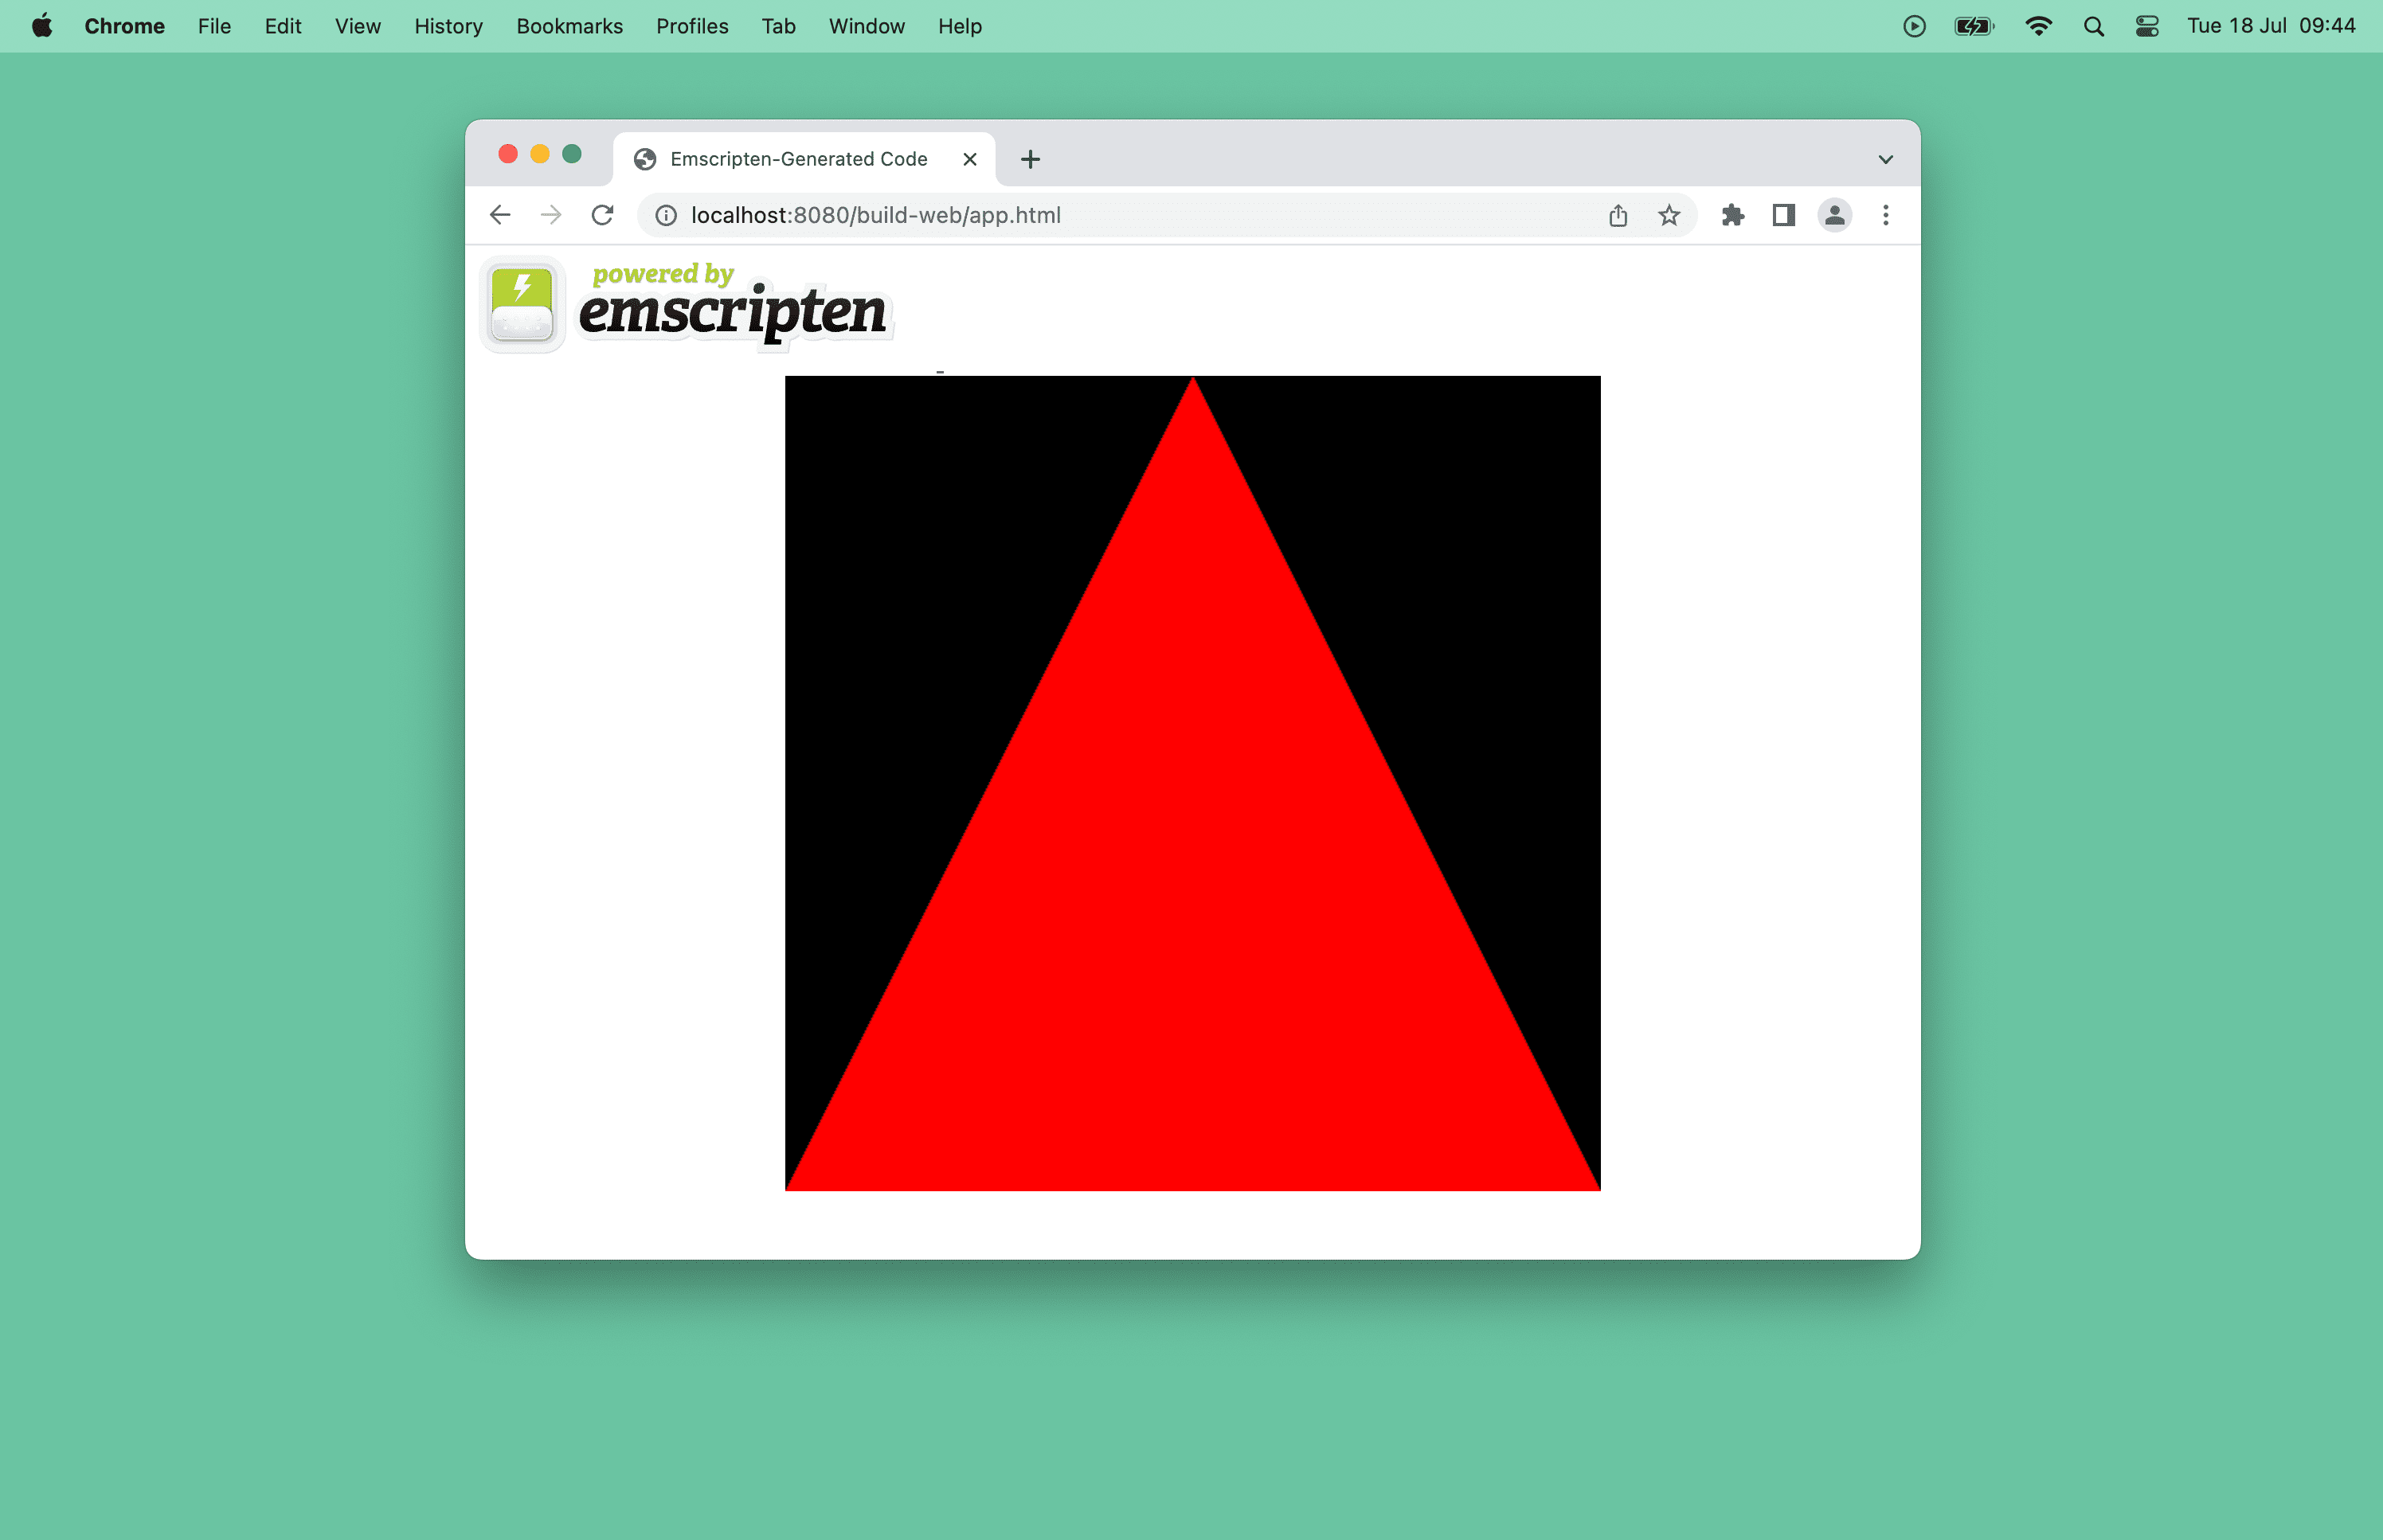 Captura de tela de um triângulo vermelho na janela de um navegador.